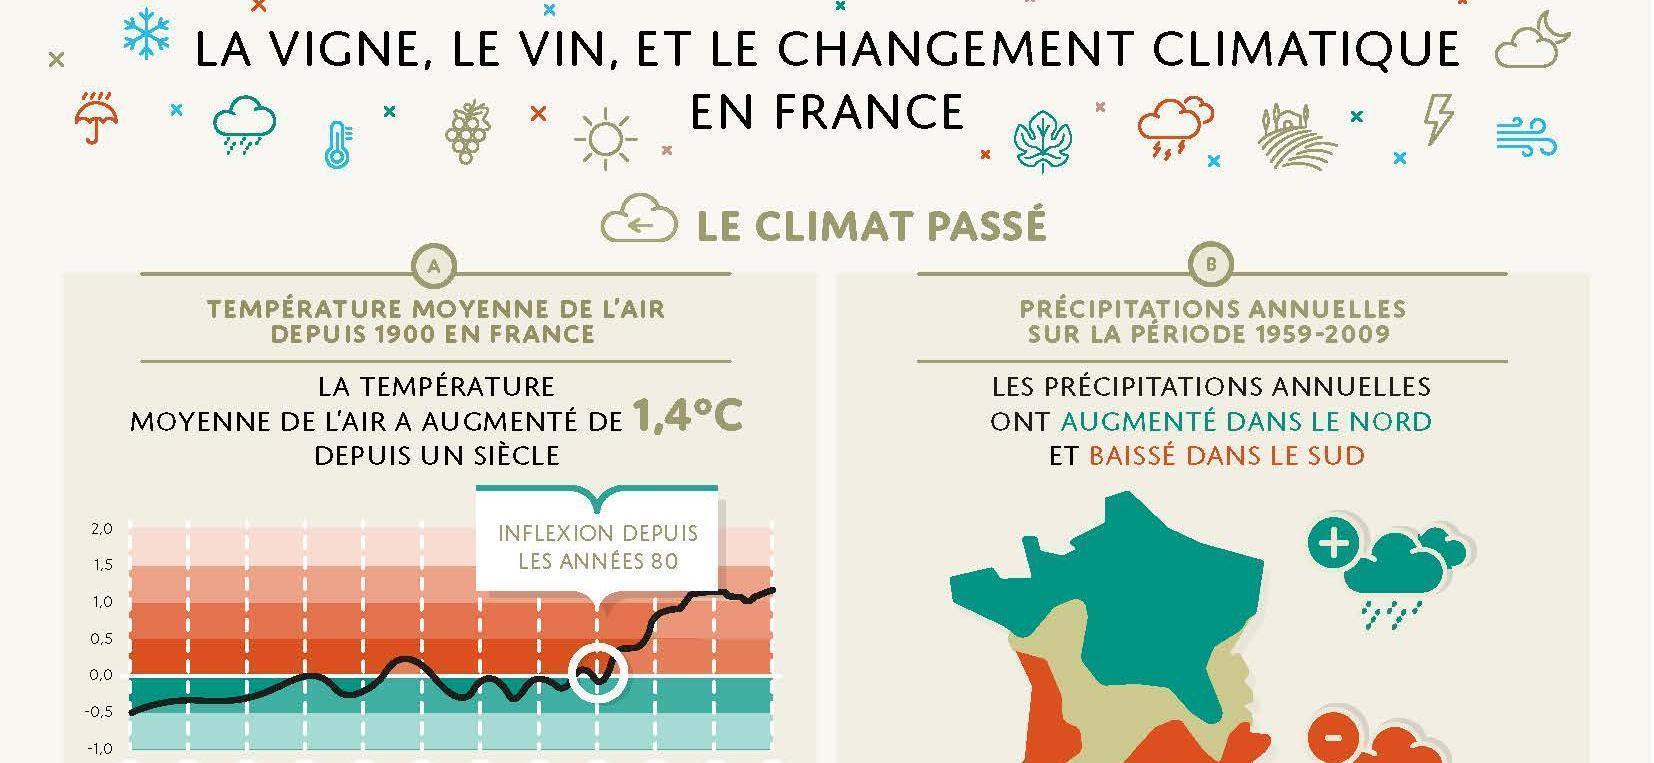 La vigne, le vin et le changement climatique en France